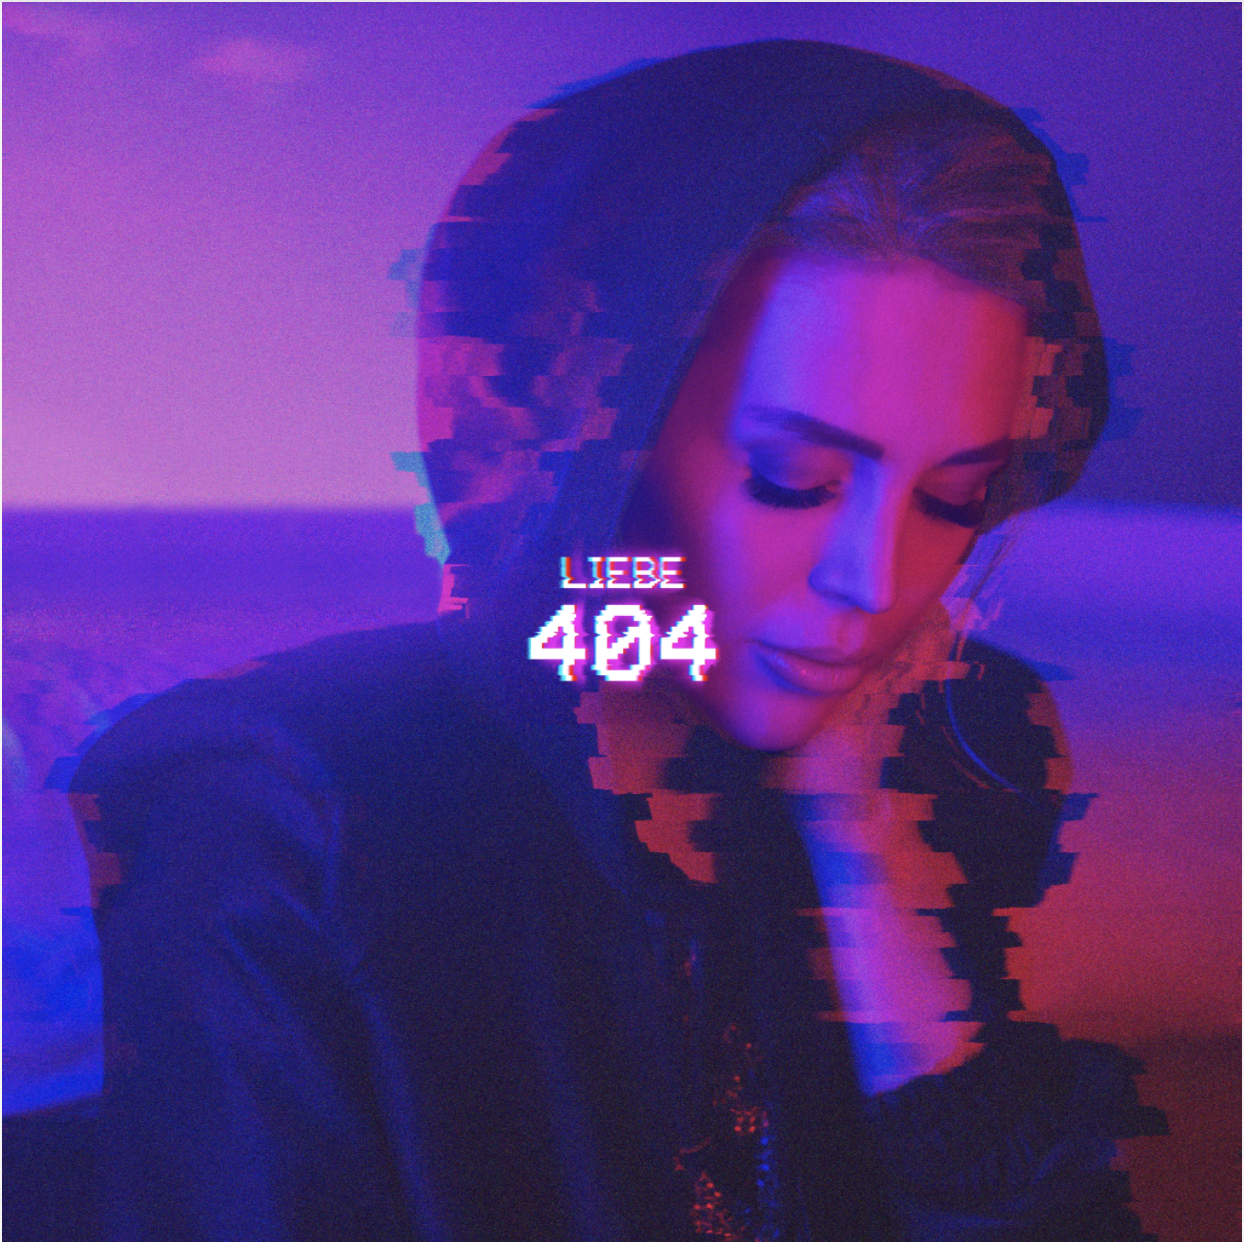 Alexa Feser
“Liebe 404”
